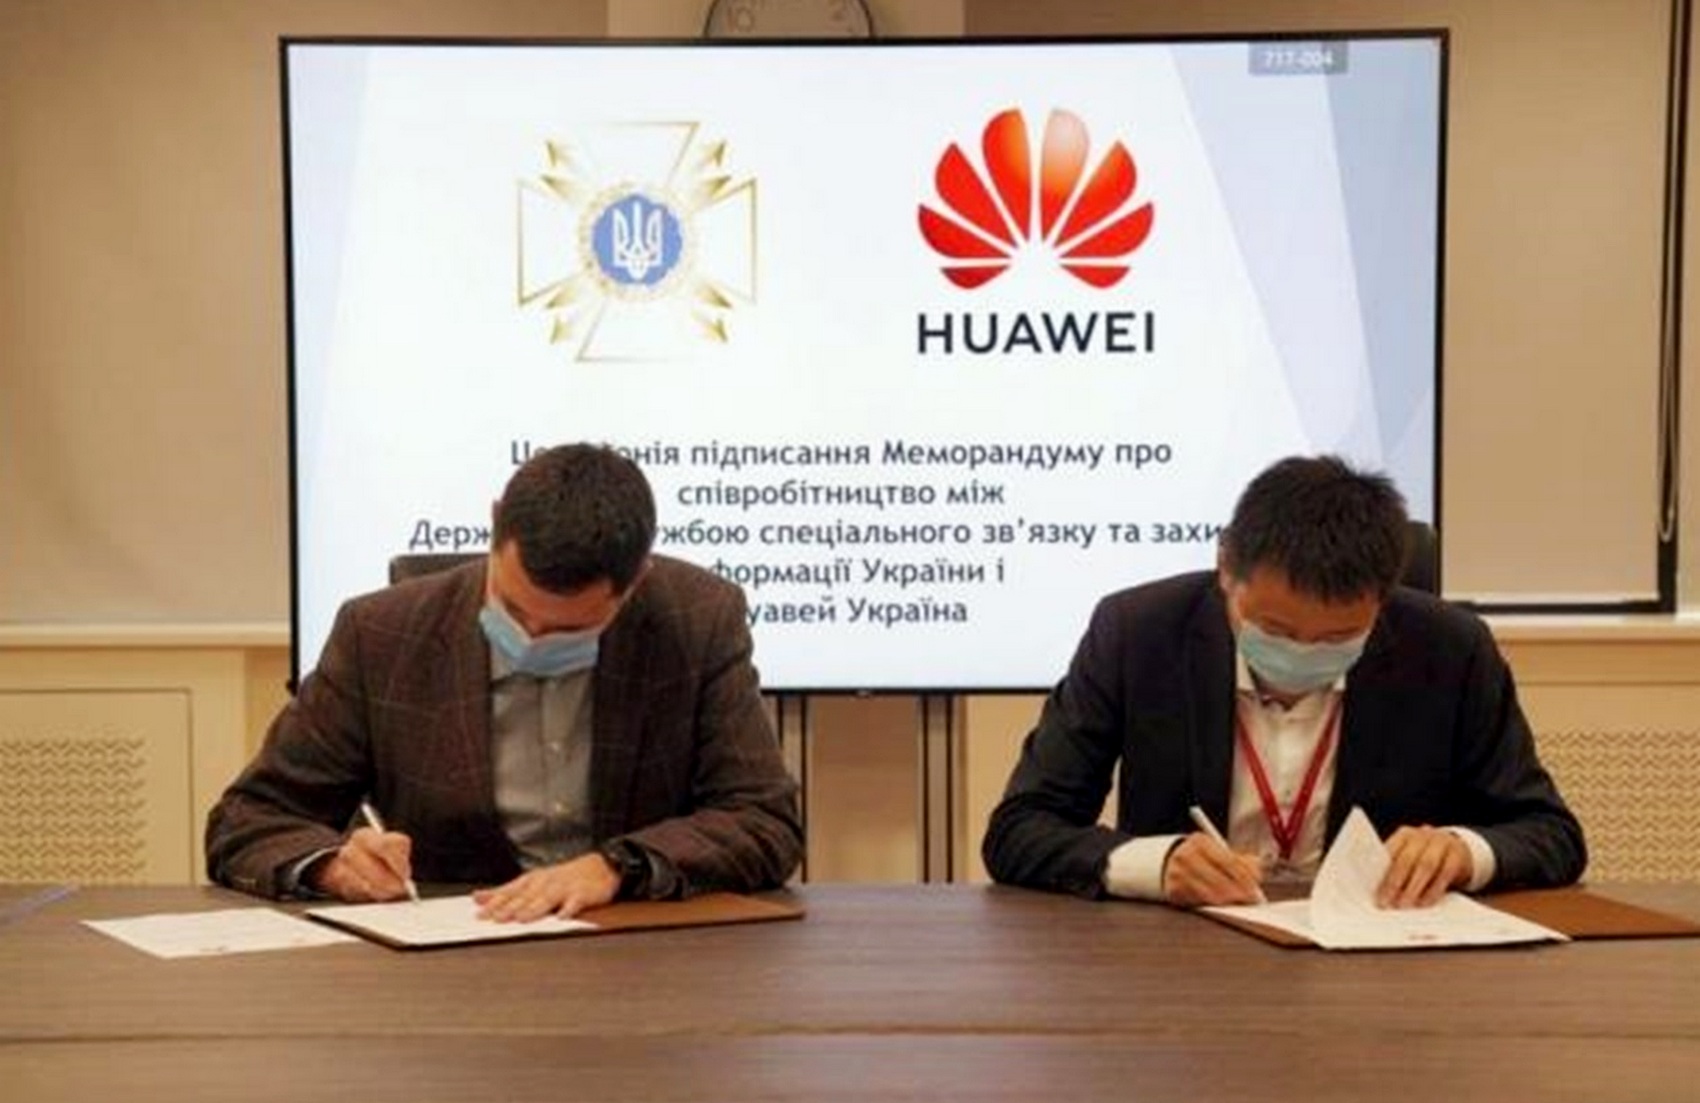 Служба спецсвязи заявила о сотрудничестве с Huawei, а потом удалила эту информацию